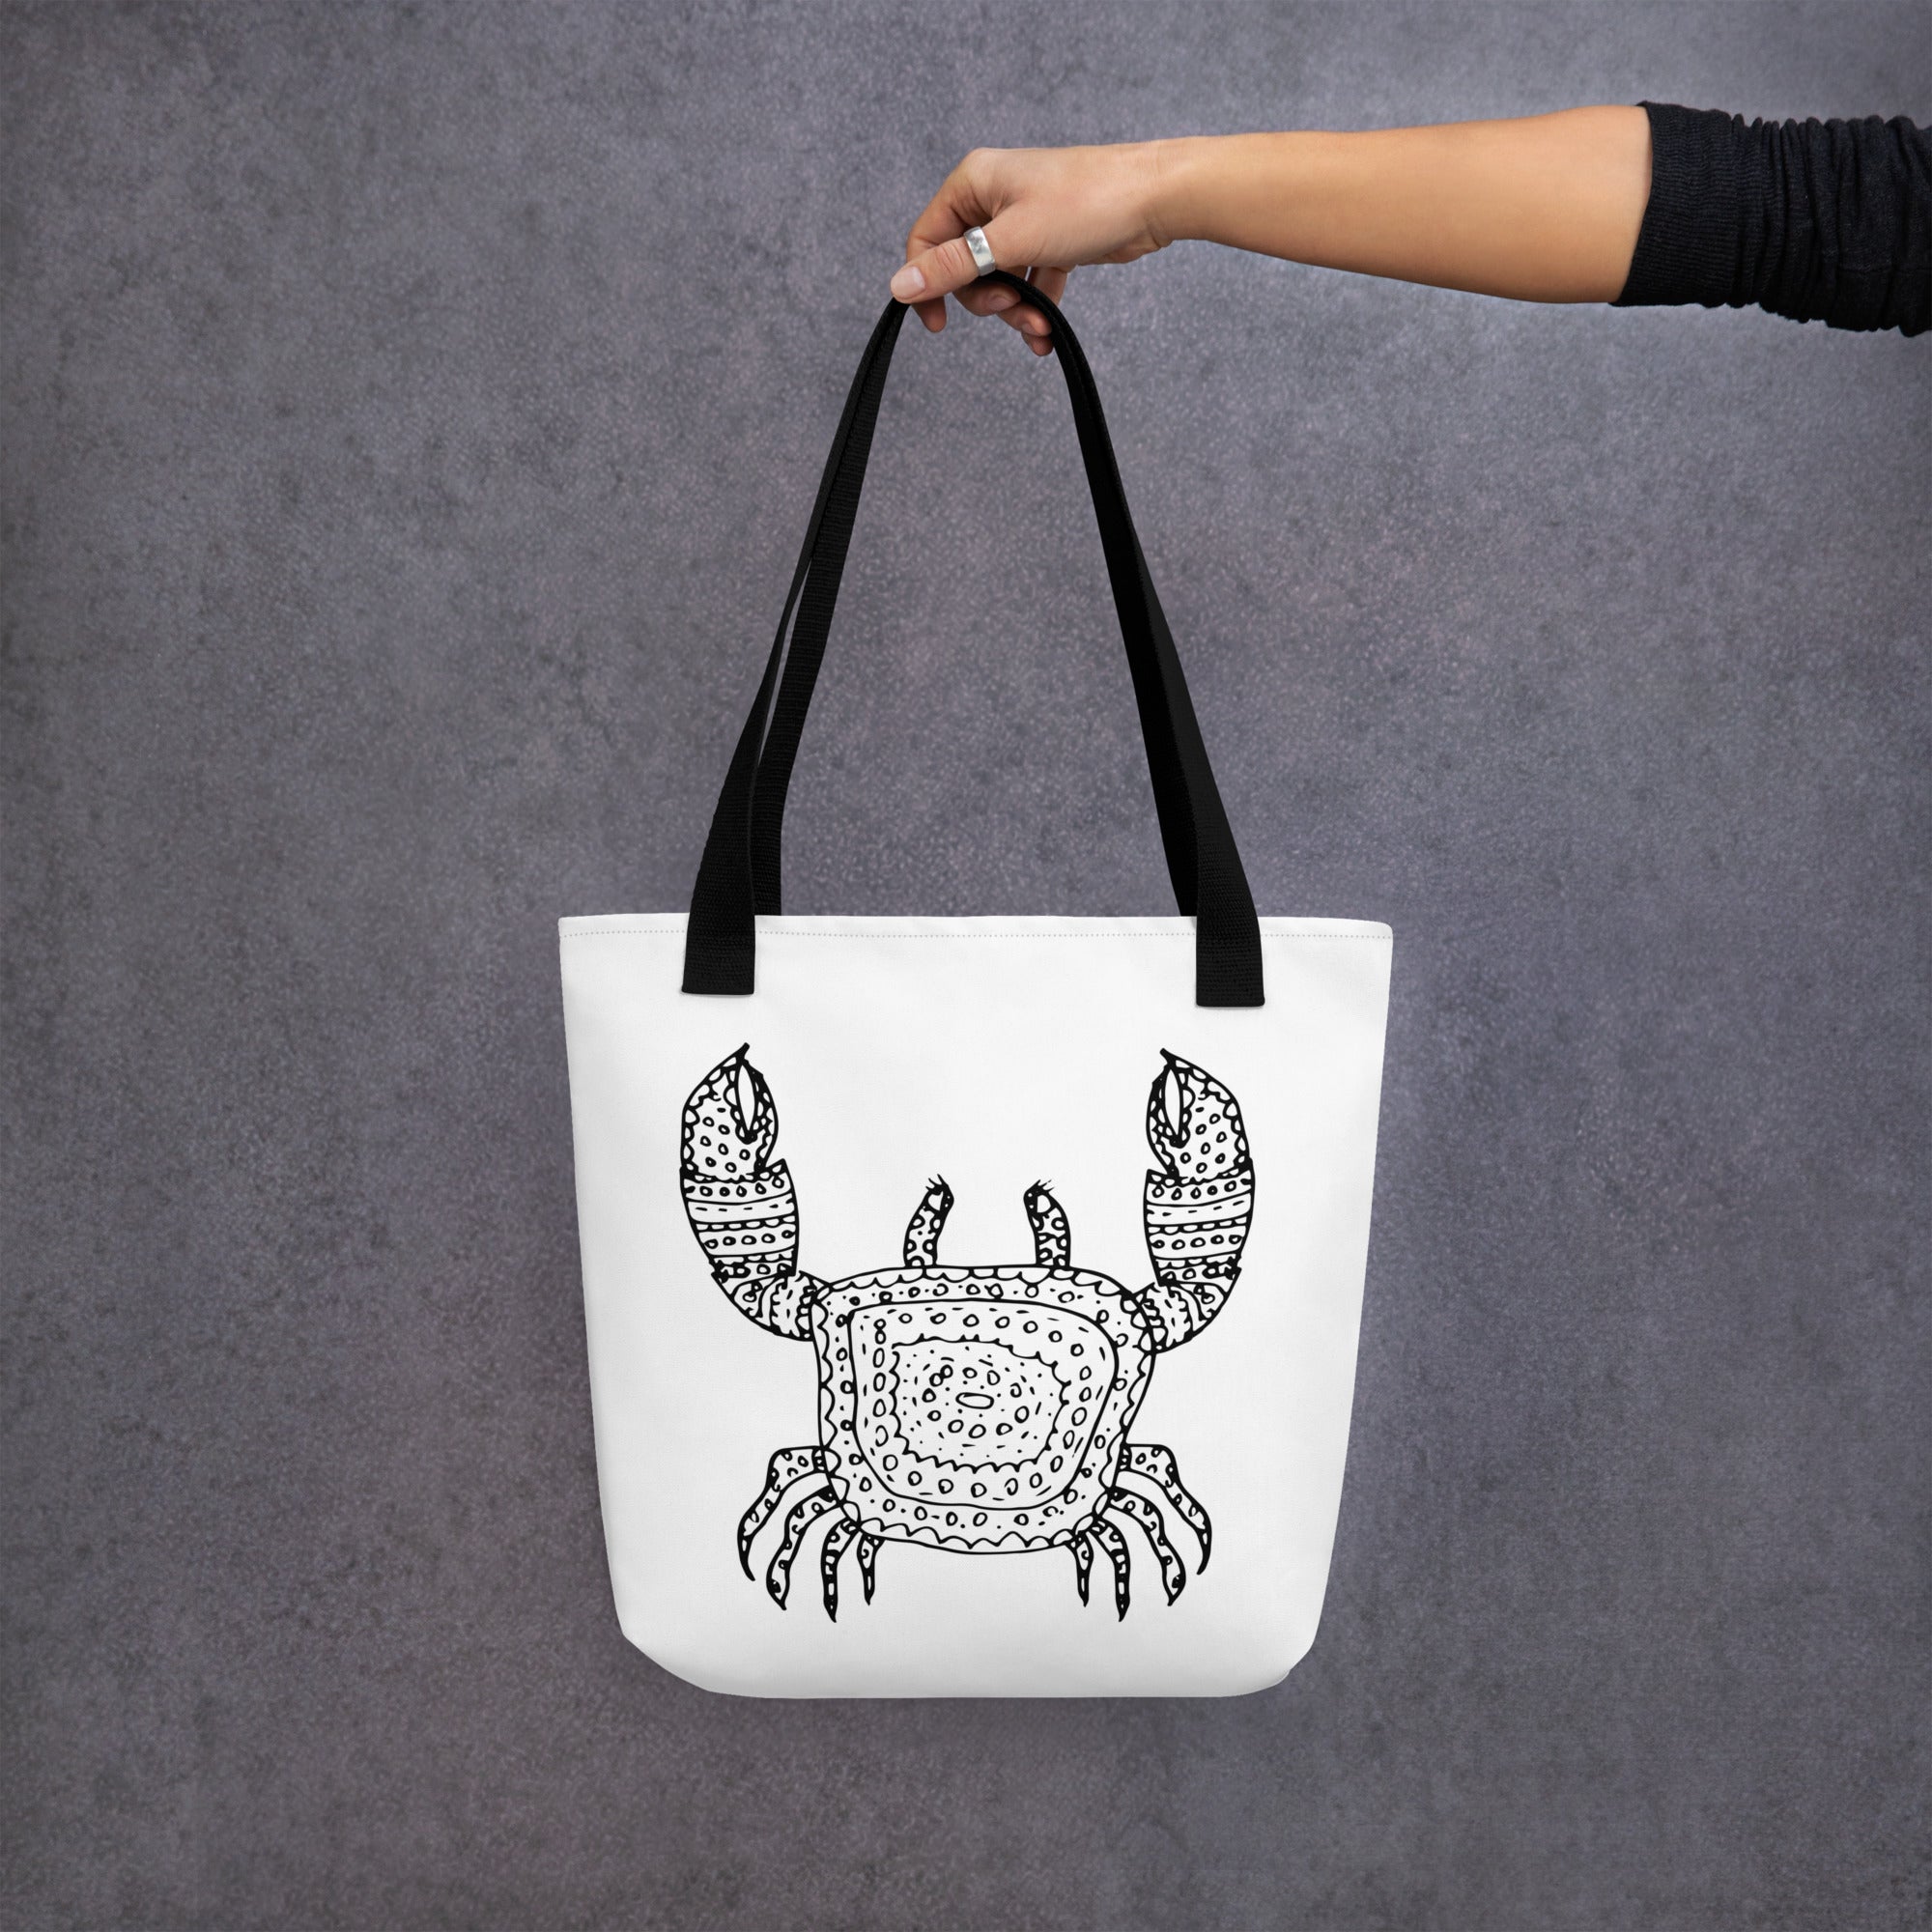 Tote bag- Ocean life Crab